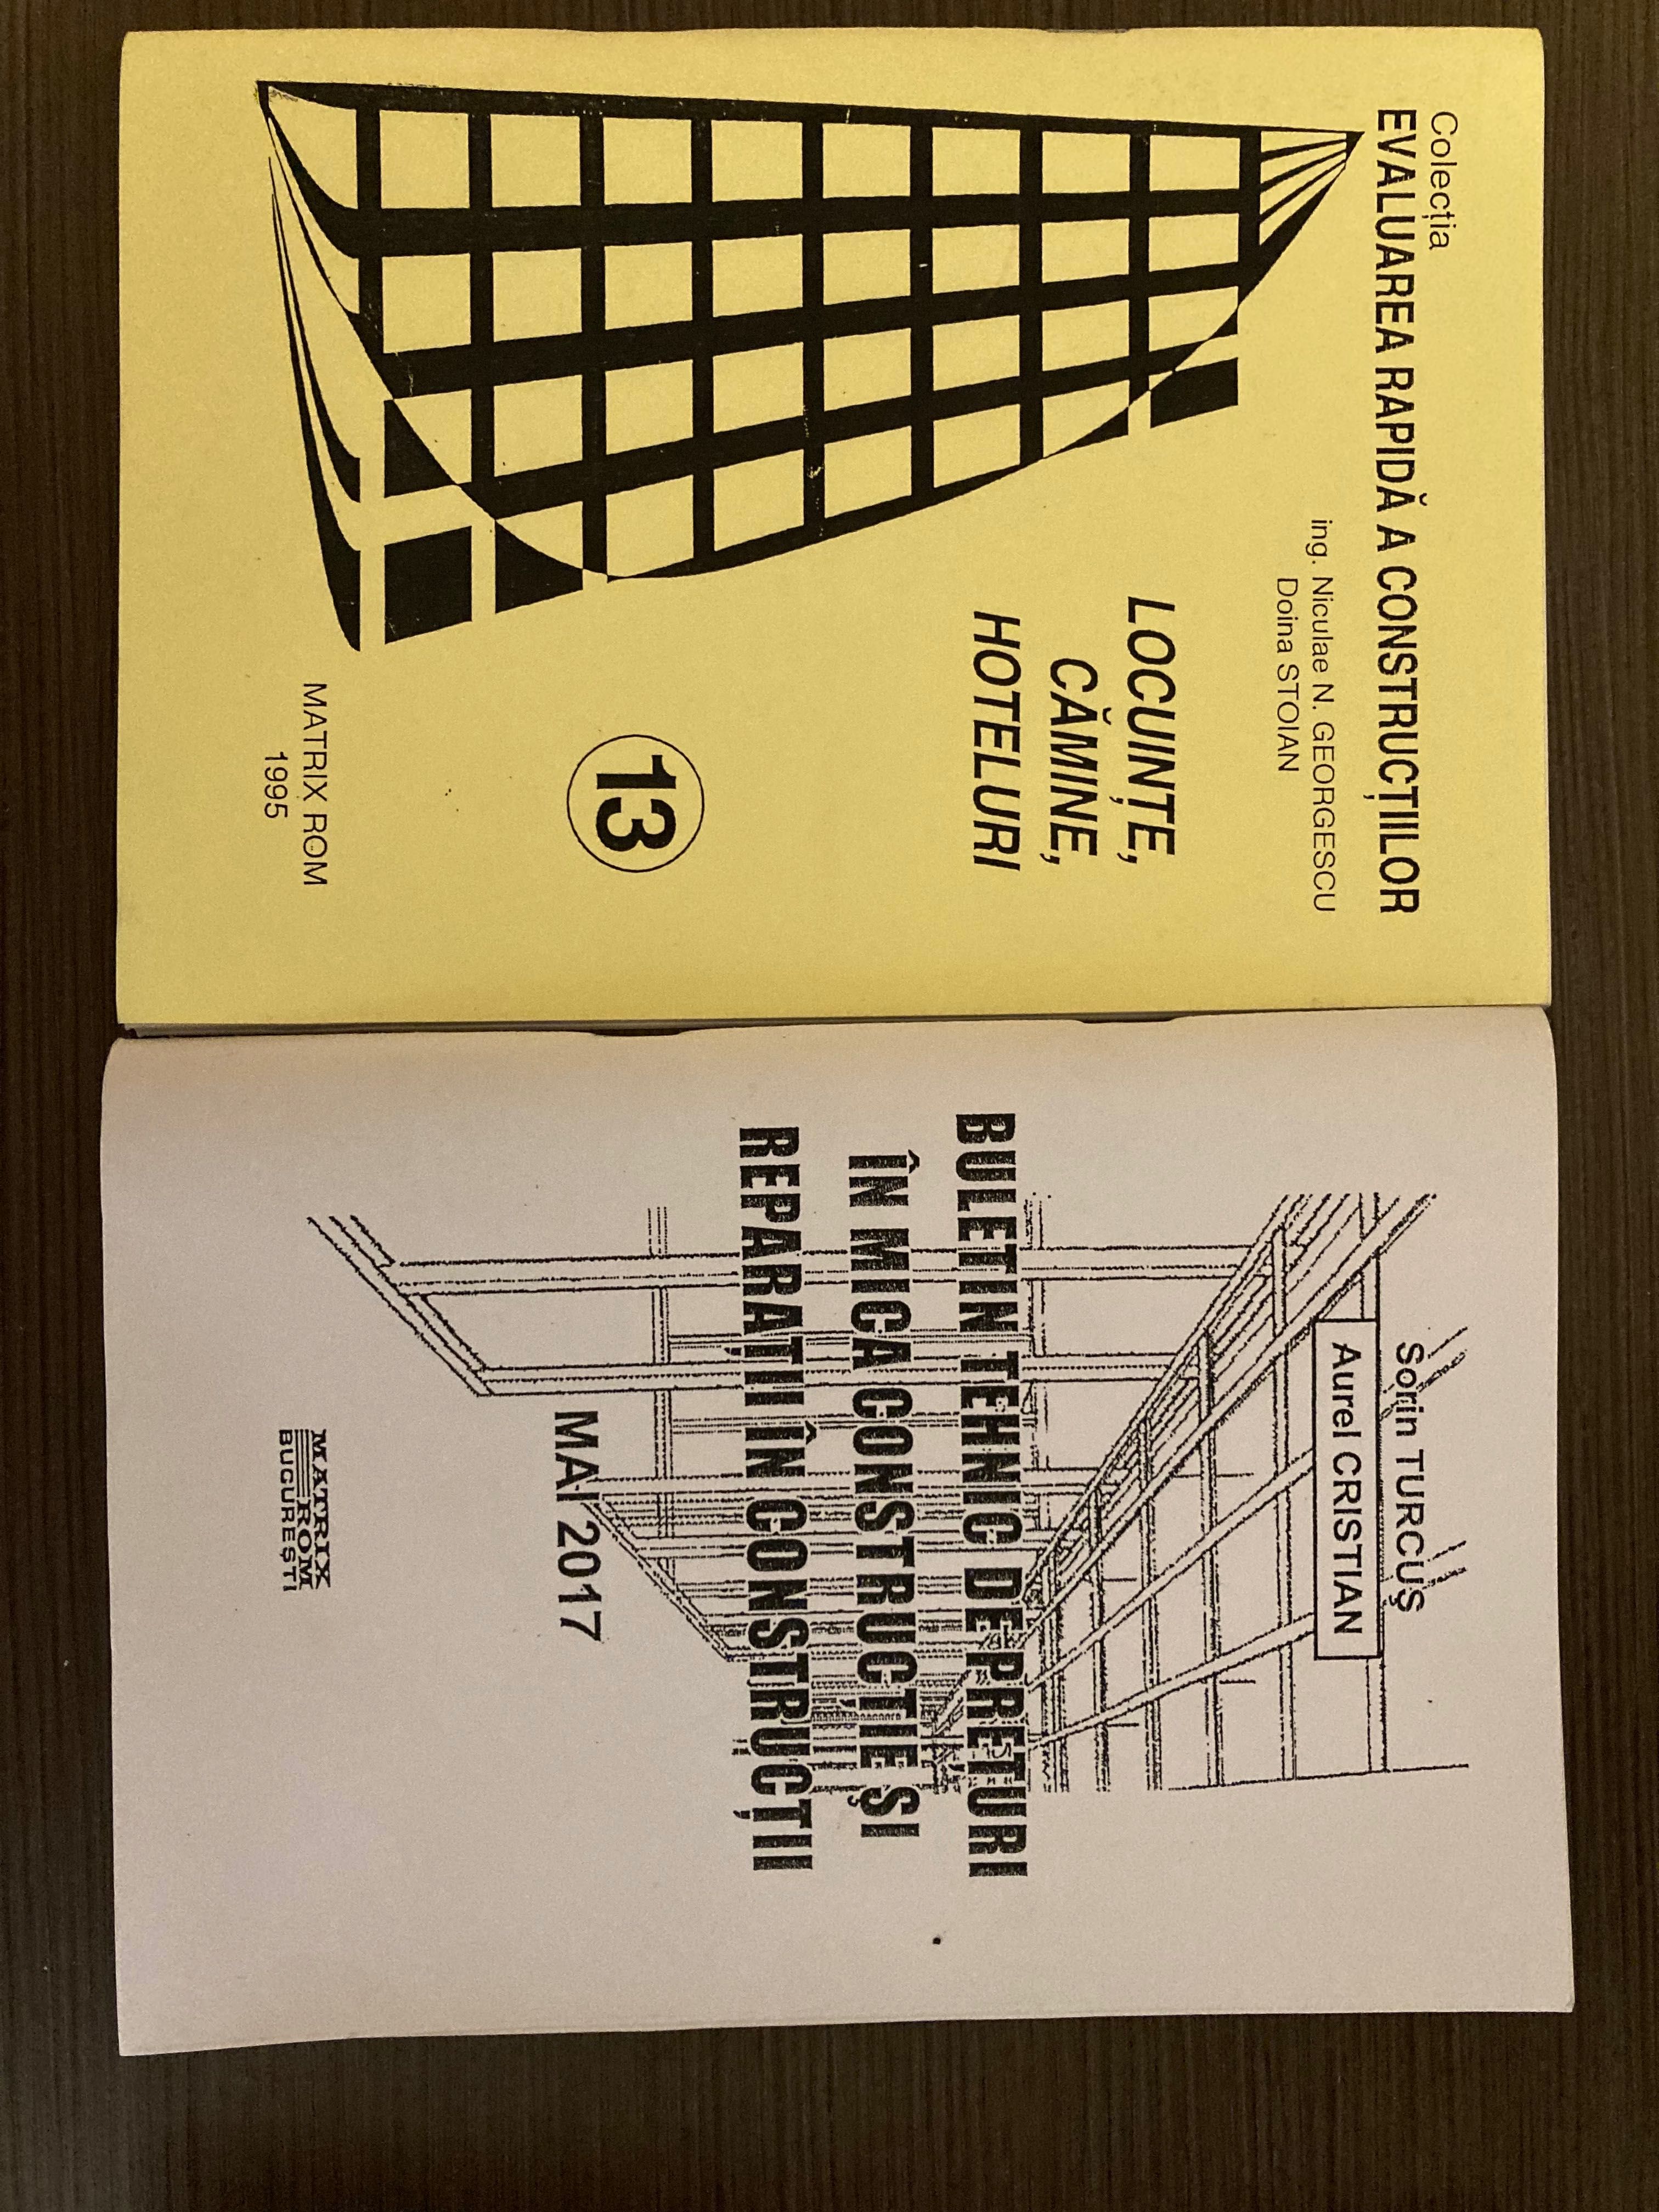 Cărți Matrix Rom - Buletine tehnice de prețuri, îndreptare tehn- 4 vol